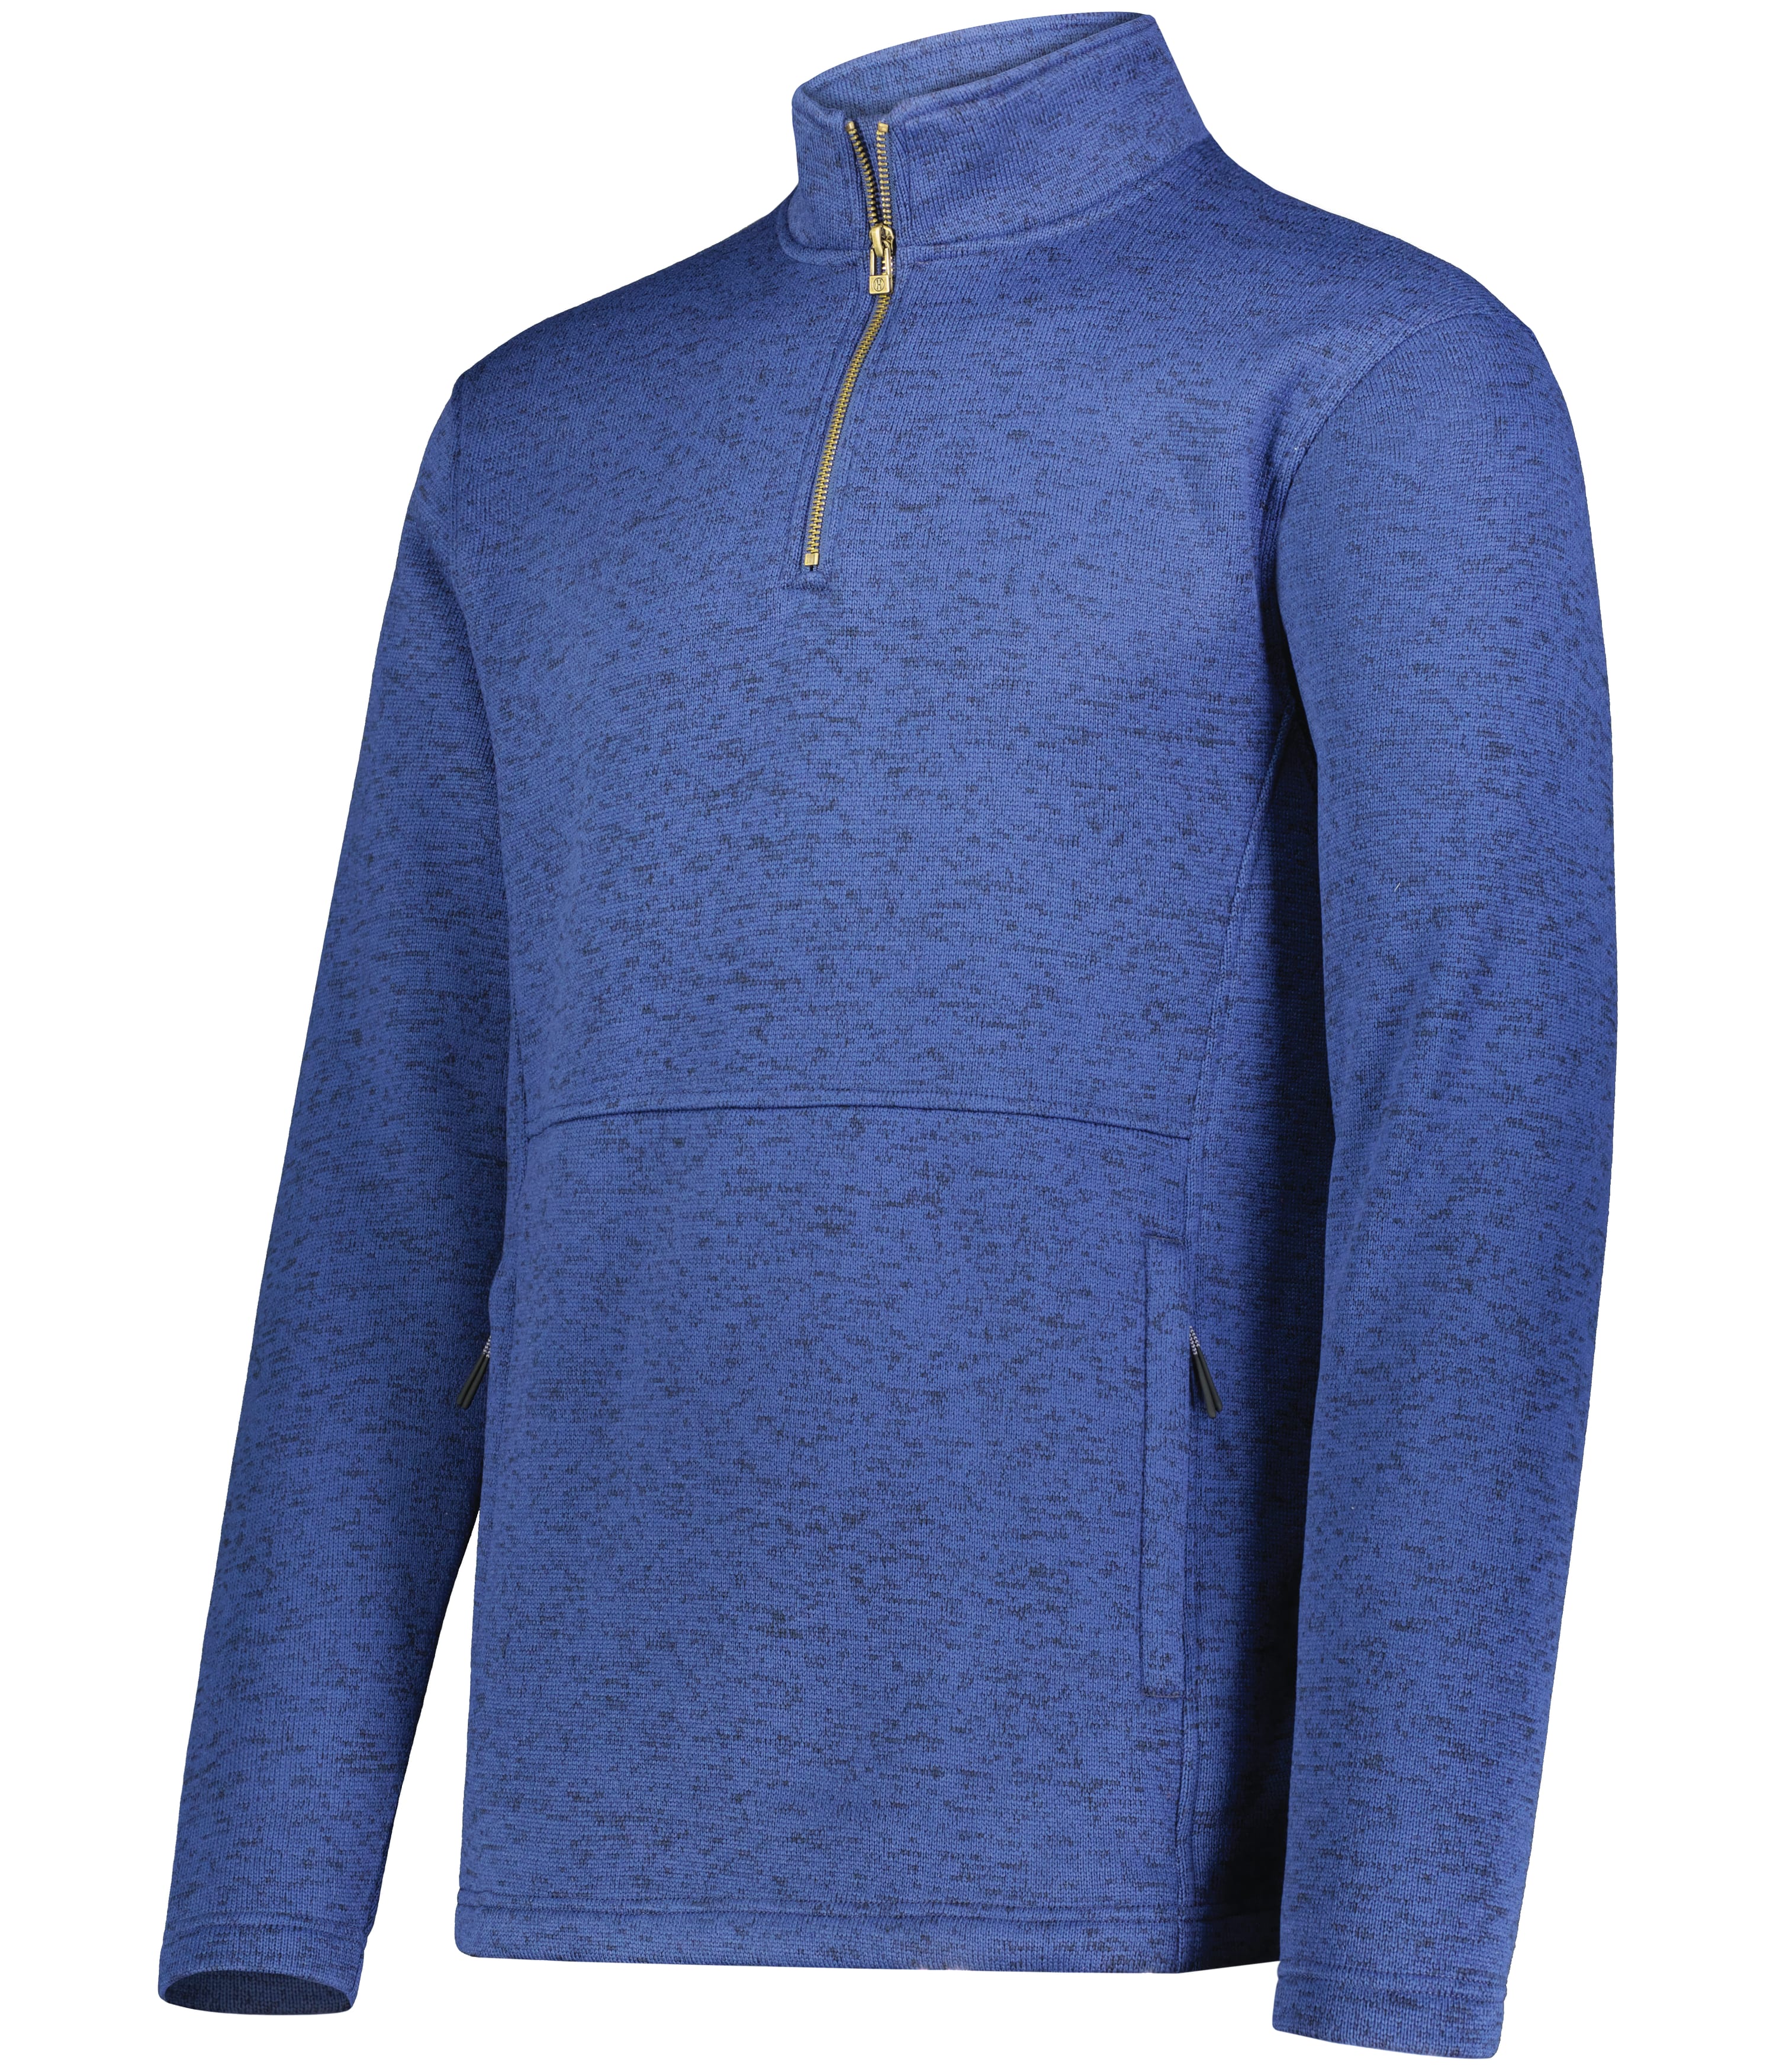 C4) 223540 Holloway Alpine sweater Fleece 1/4 Zip Pullover - CONNECT WORK TOOLS